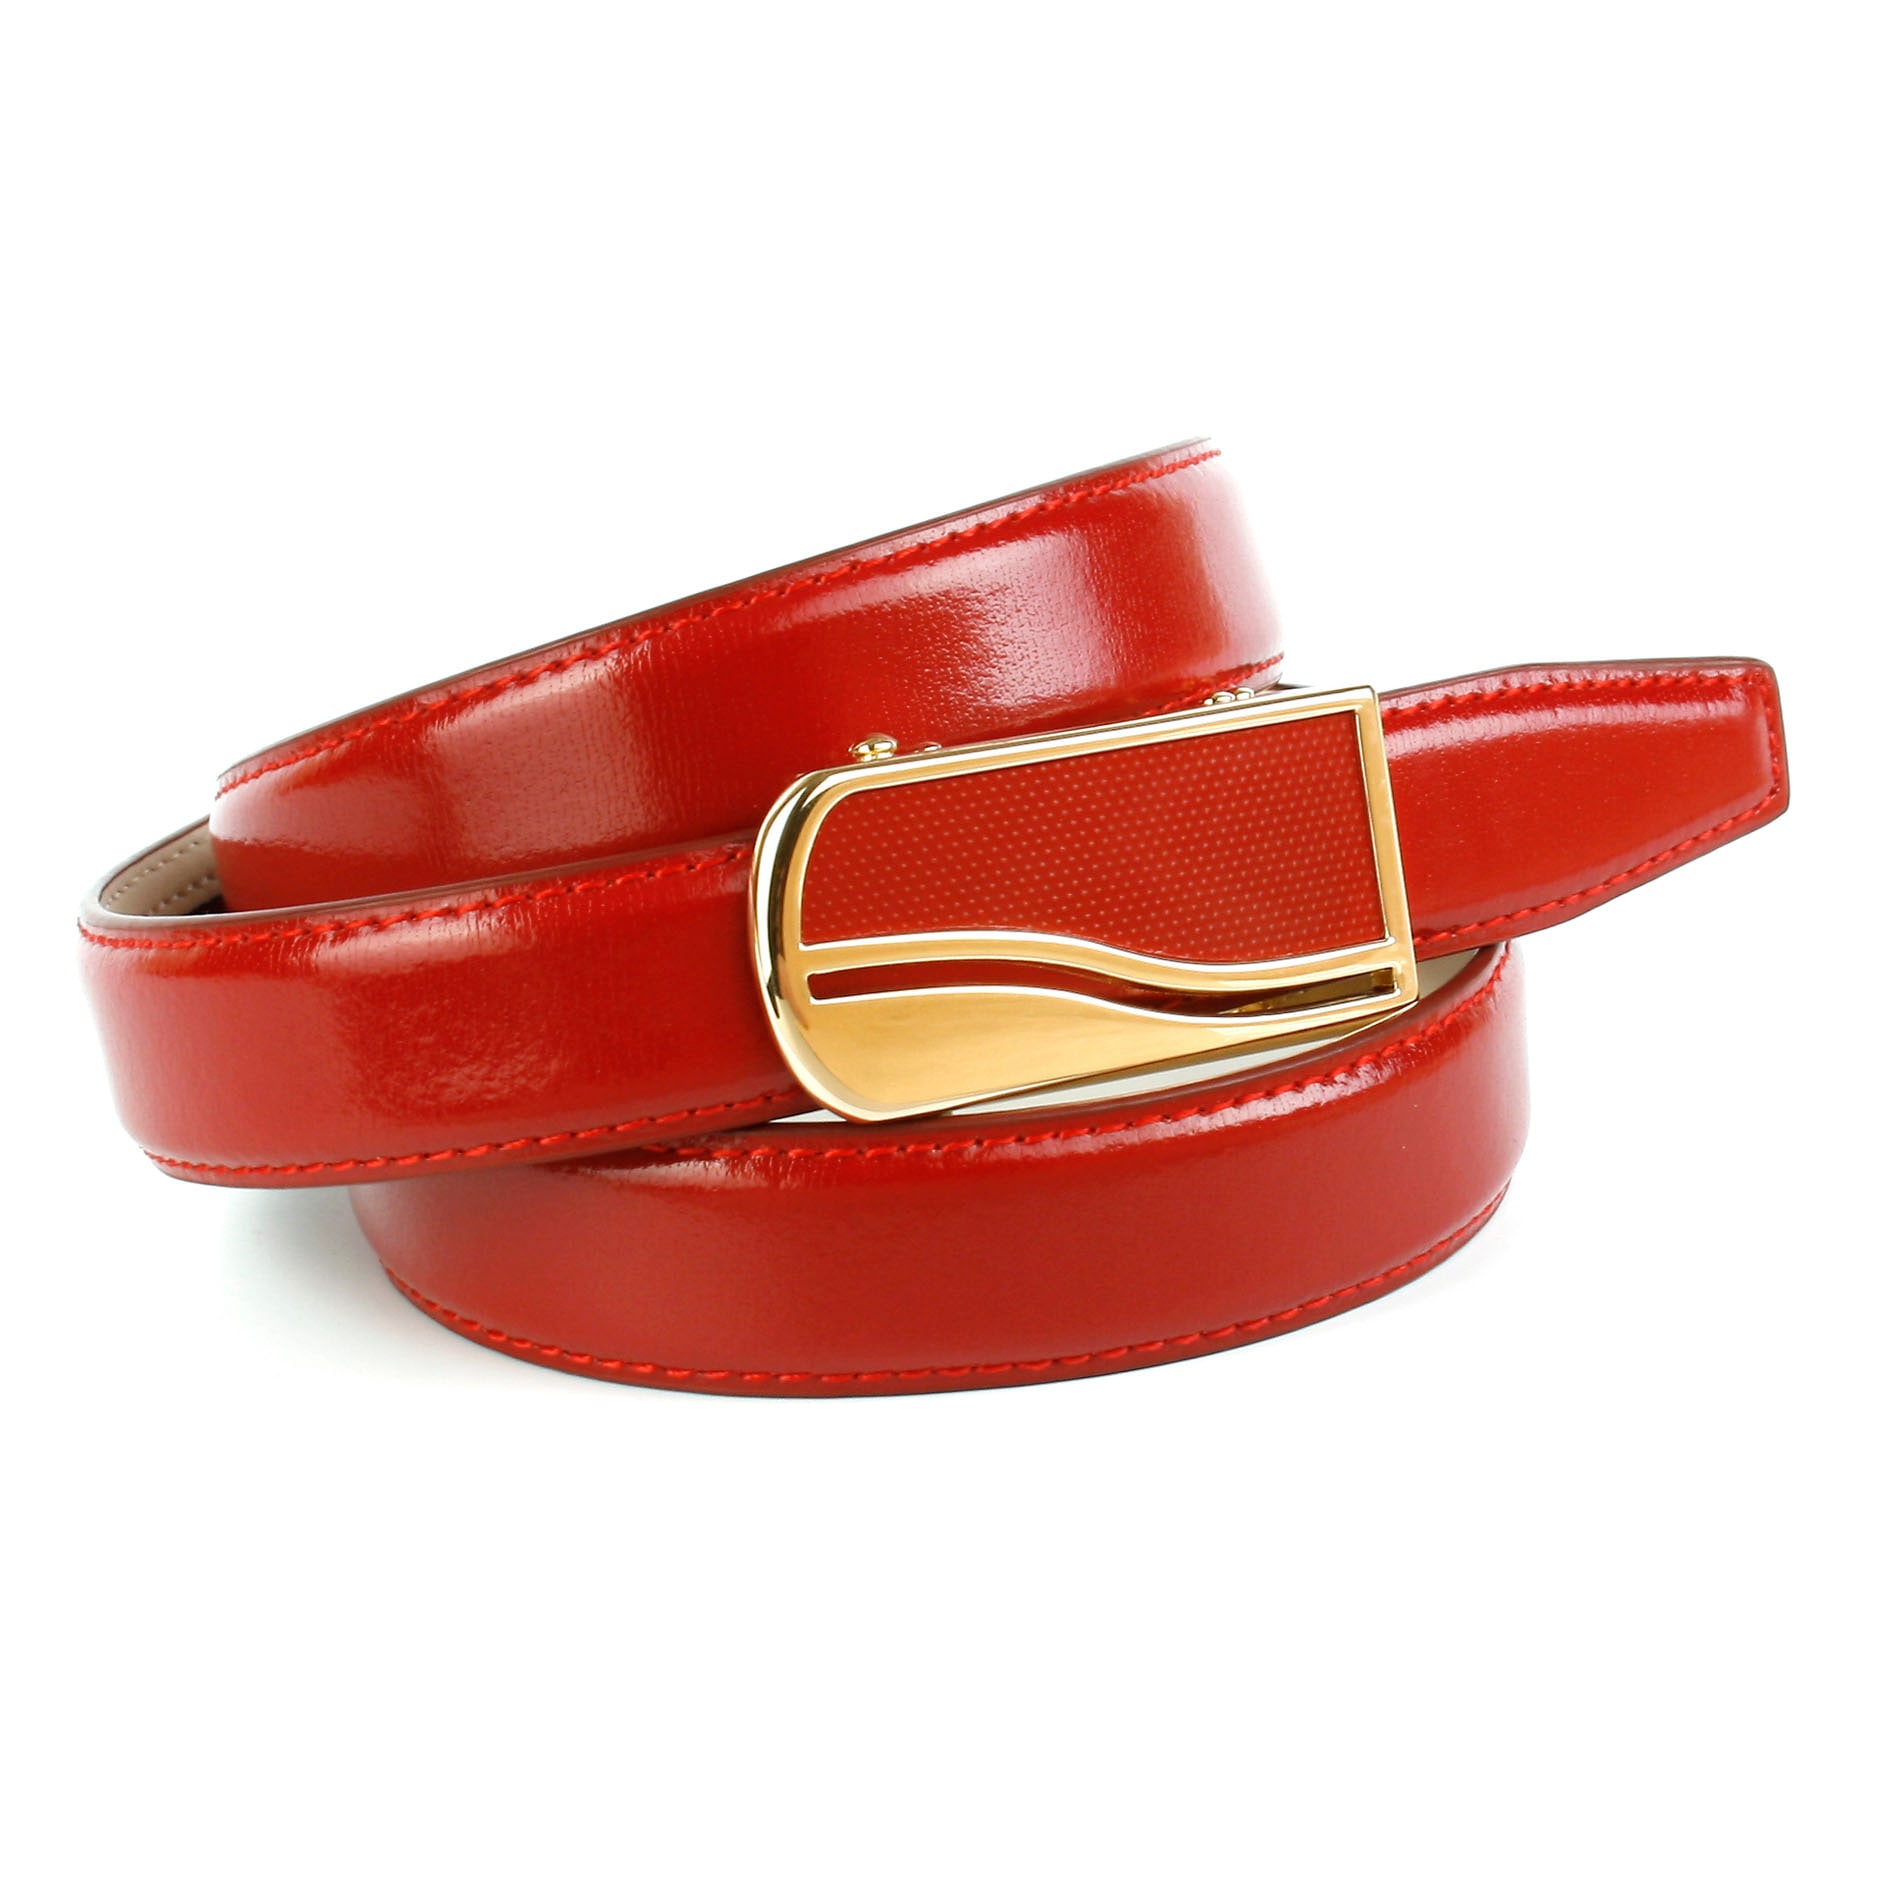 Anthoni Crown Ledergürtel, 2,4 Rechnung cm kaufen rot auf femininer in Ledergürtel